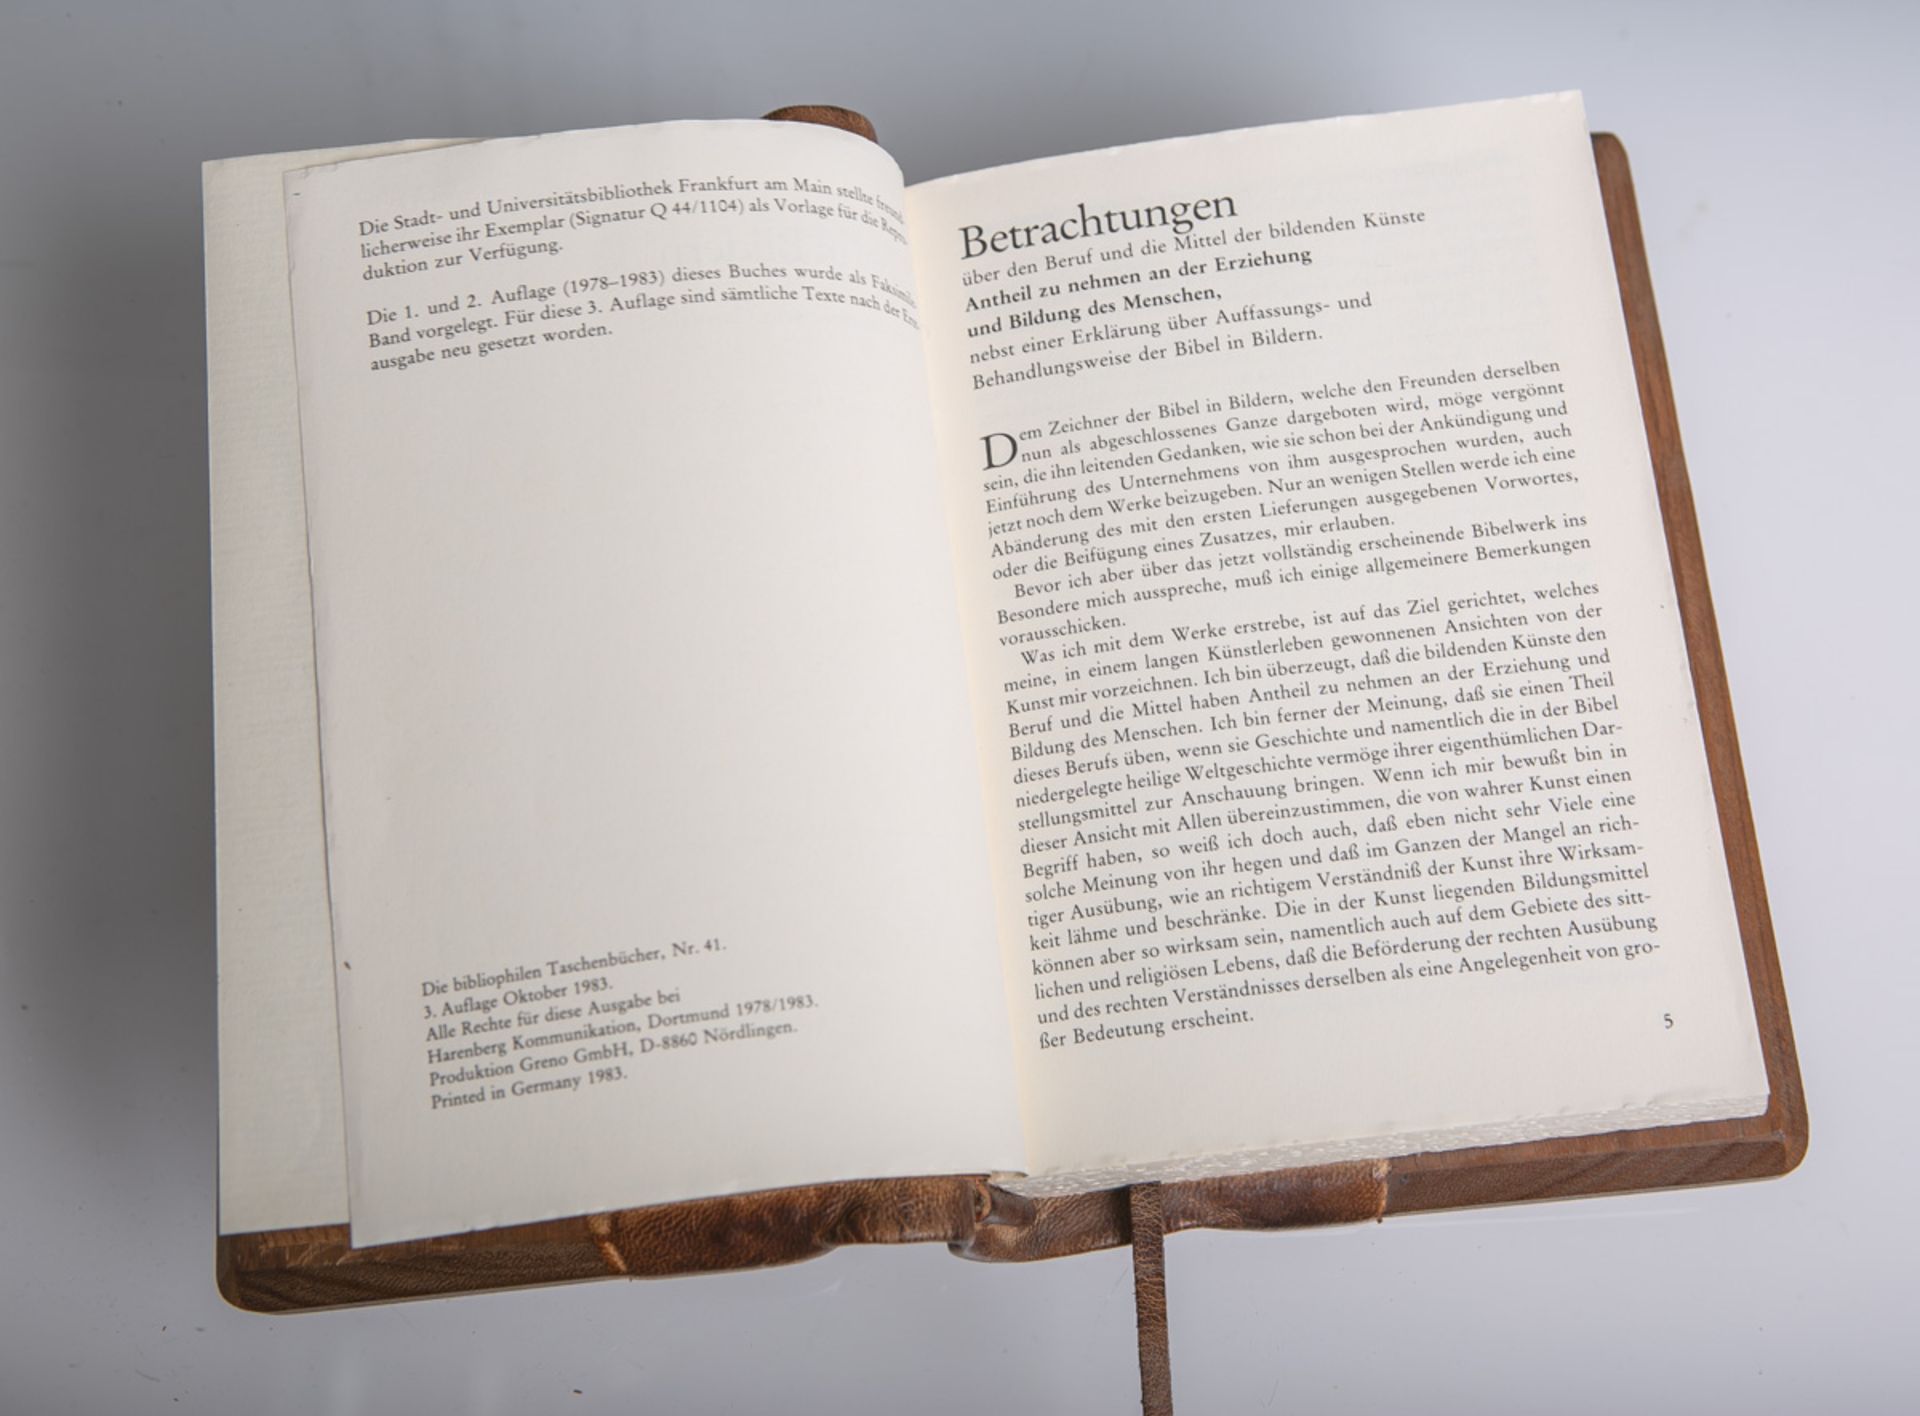 von Carolsfeld, Julius Schnorr, "Die Bibel in Bildern, Edition arte medici" - Image 2 of 2